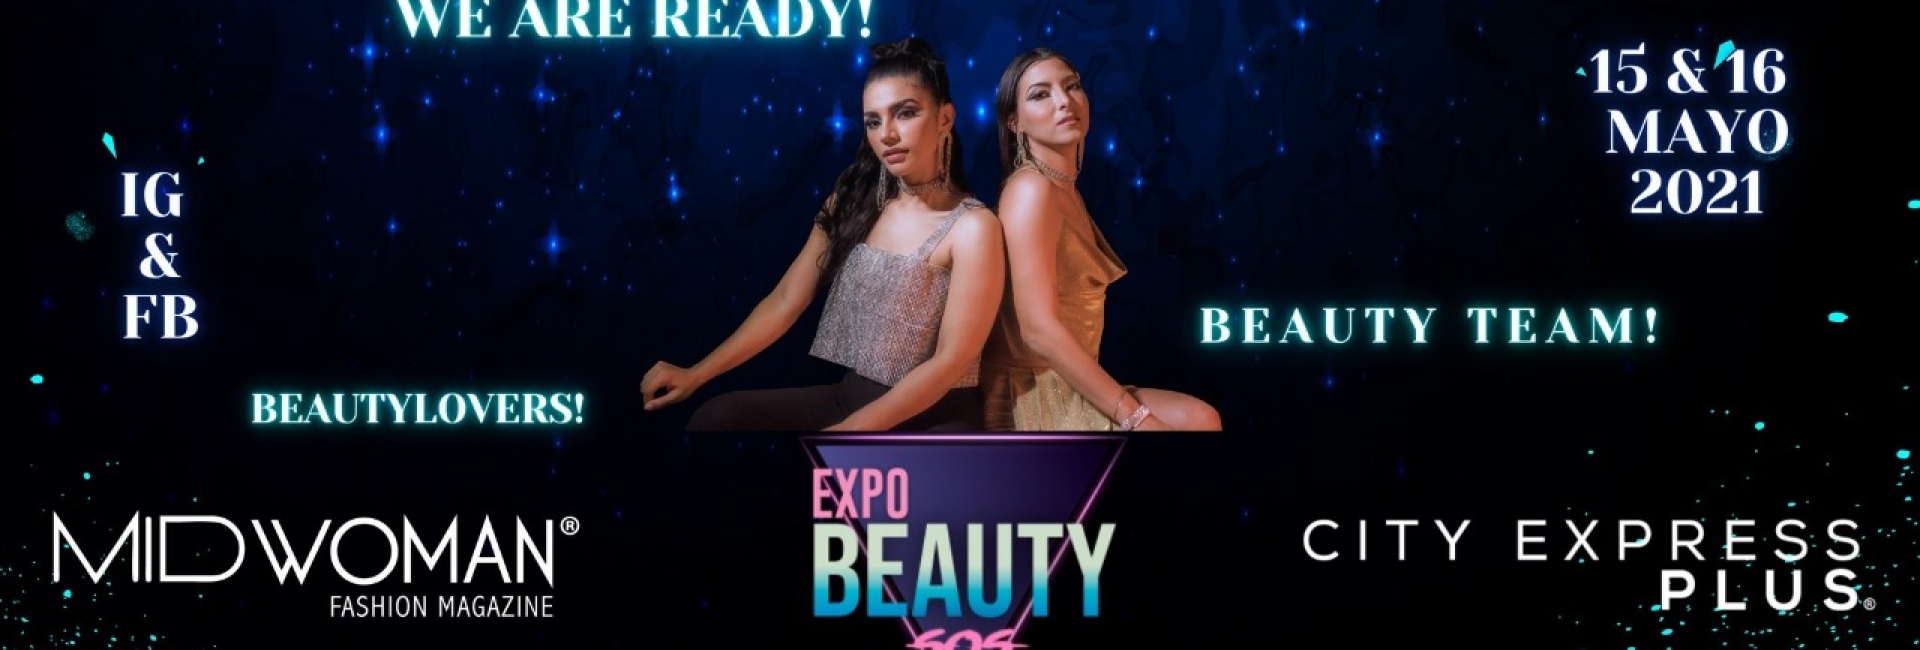 Expo Beauty SOS 2021.